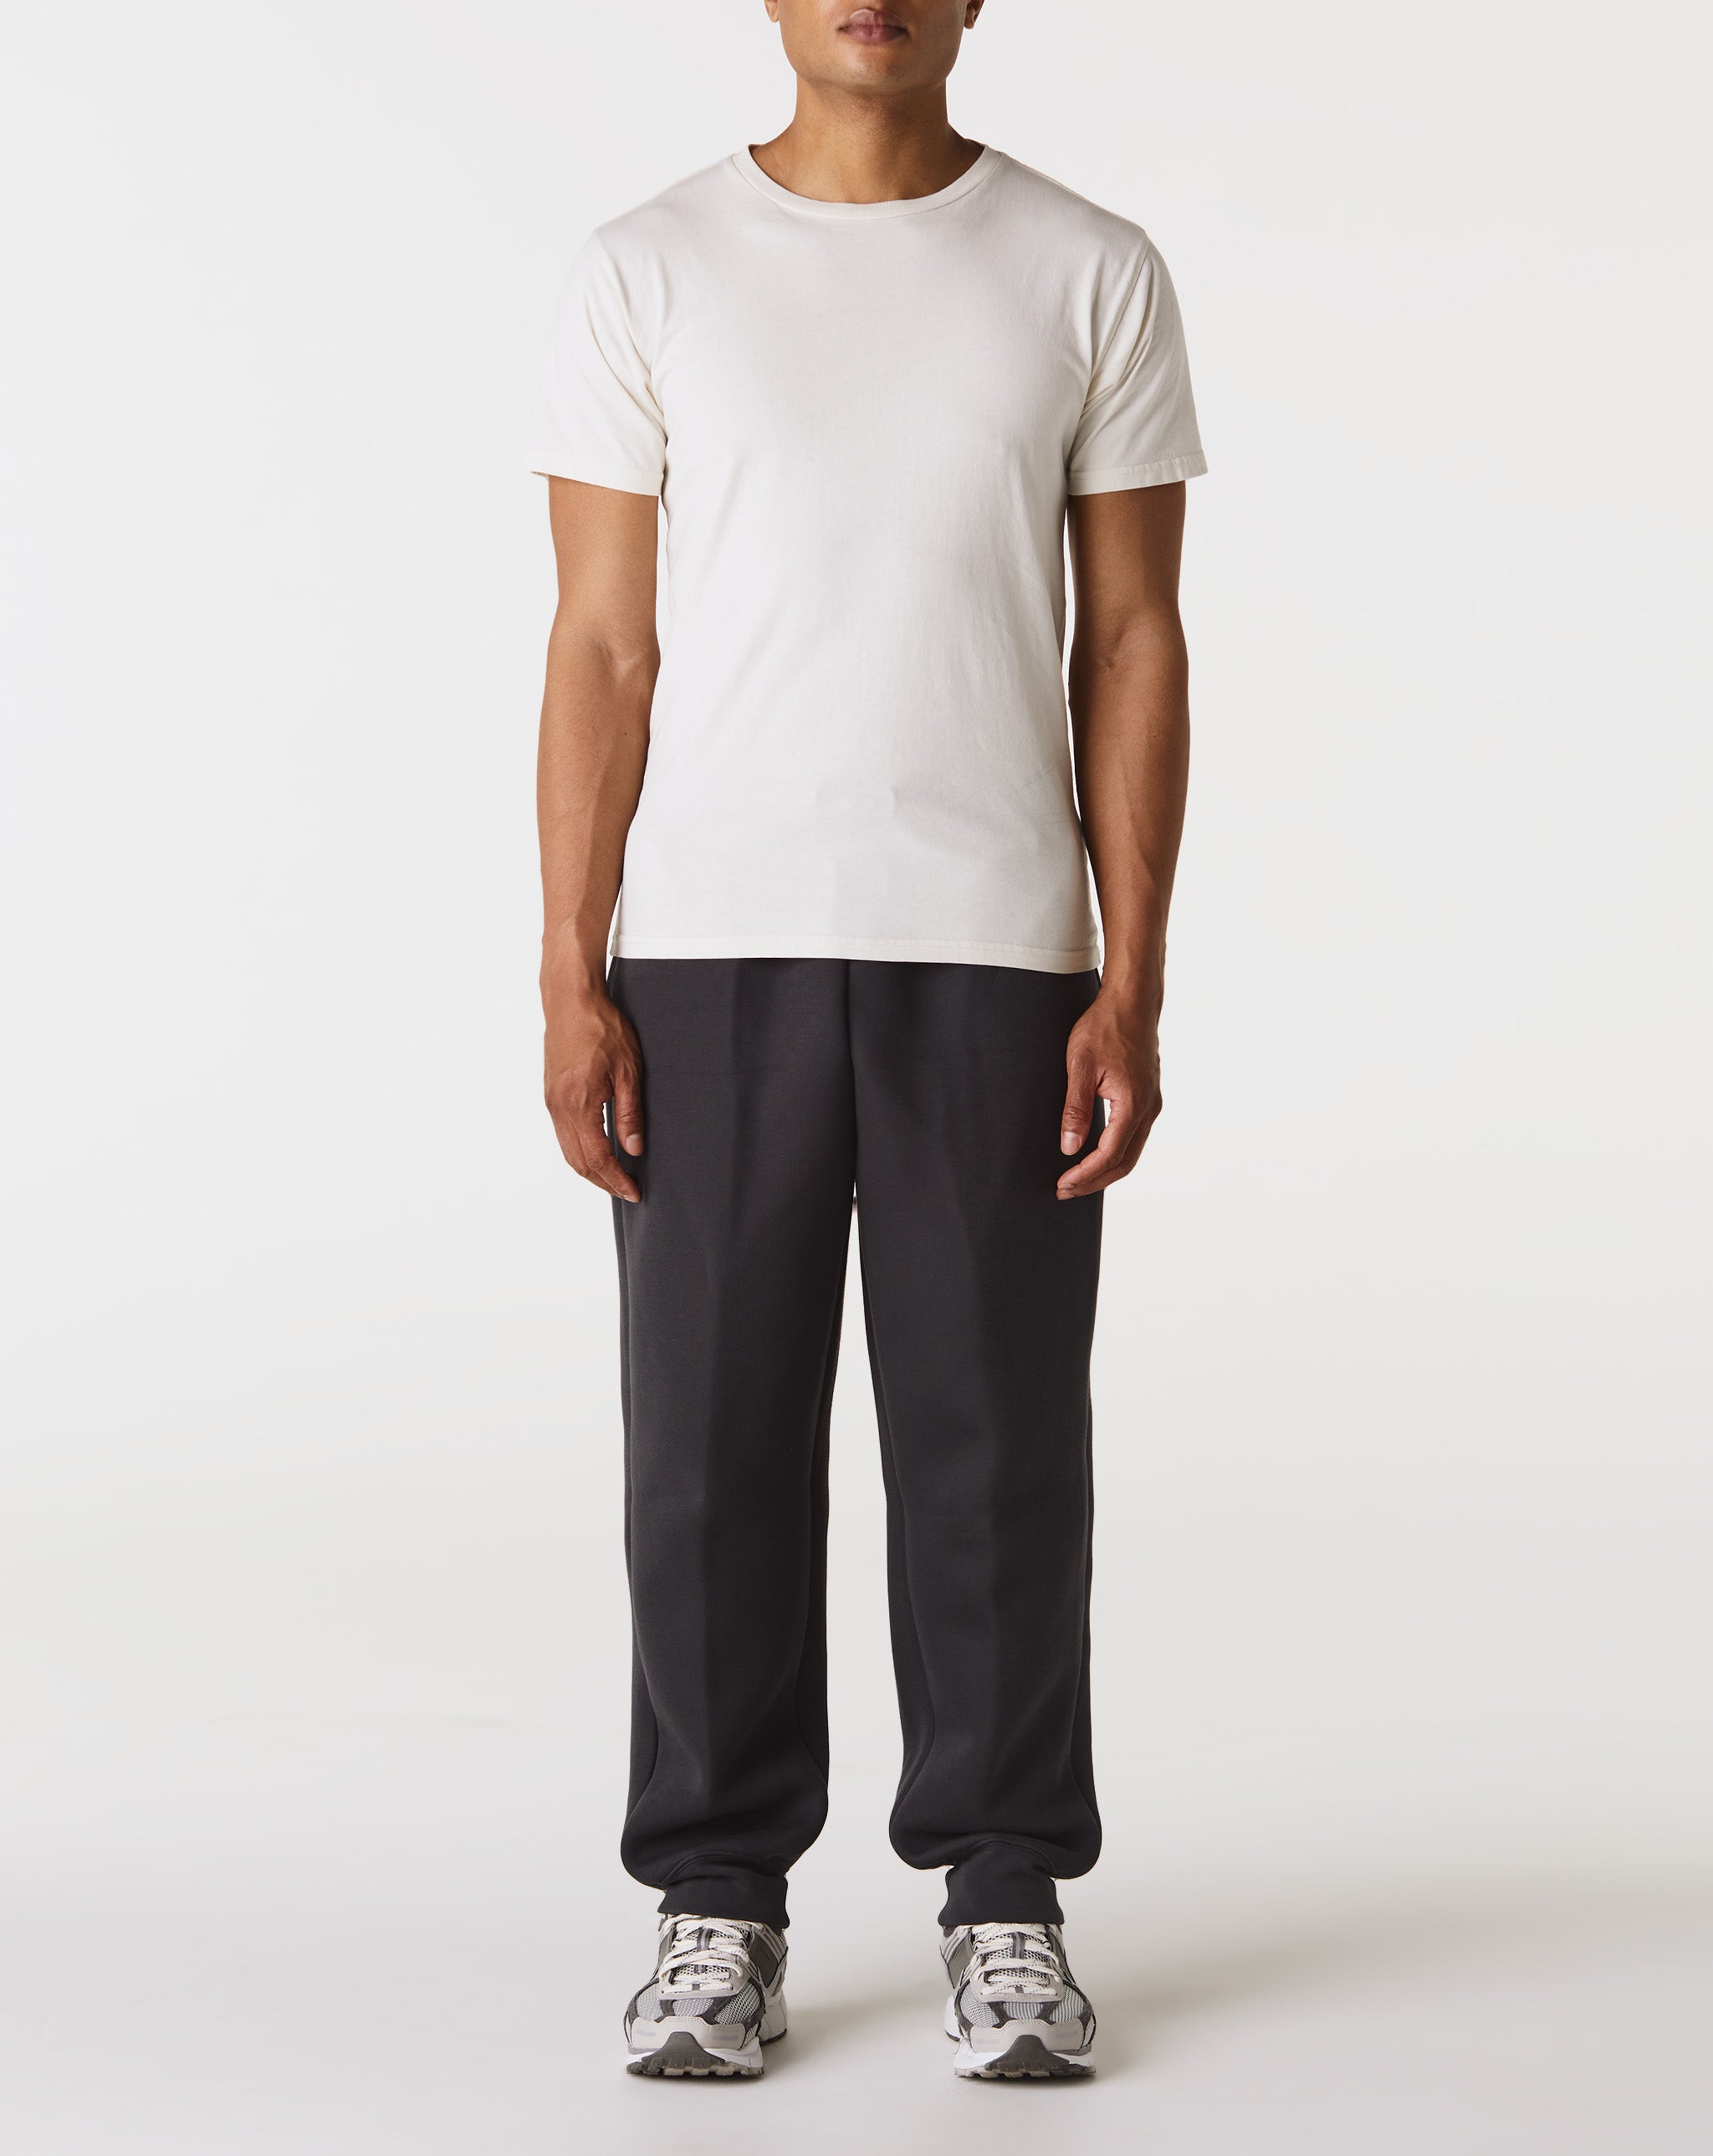 Nike Tech Fleece Pants  - Cheap Cerbe Jordan outlet